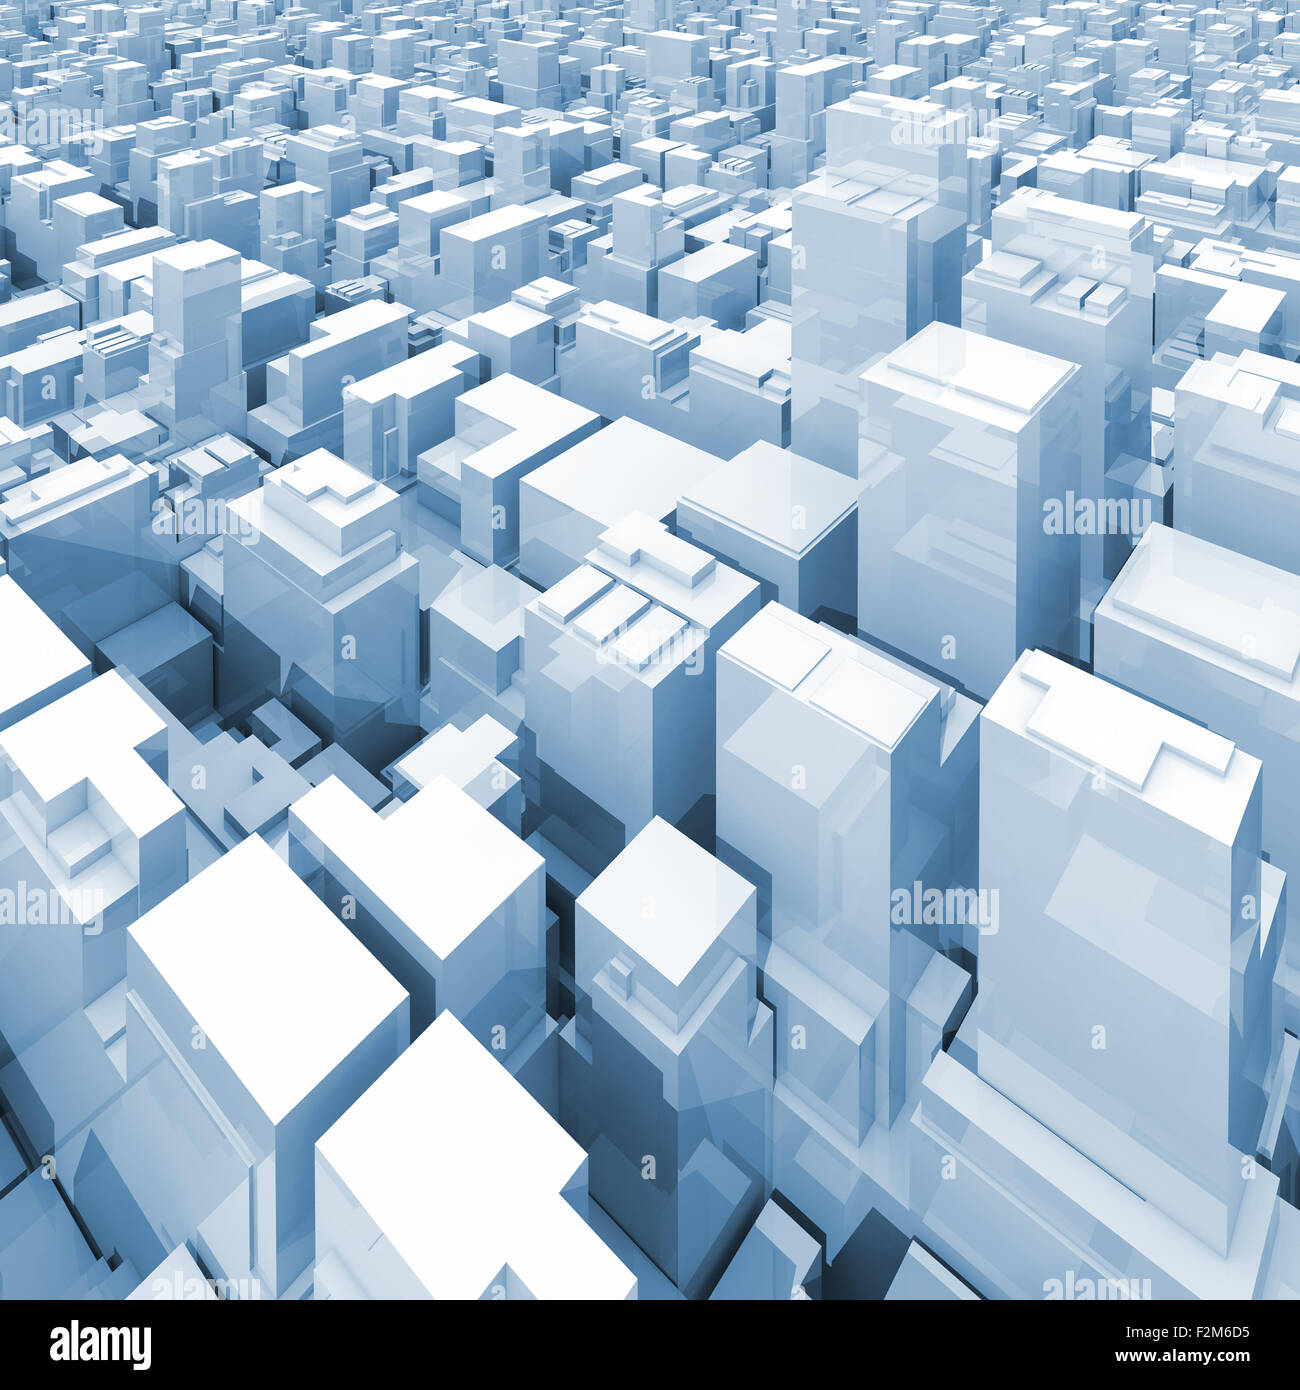 Abstract cityscape numérique avec de grands gratte-ciels et des immeubles de bureaux, aux tons bleu square 3d illustration Banque D'Images